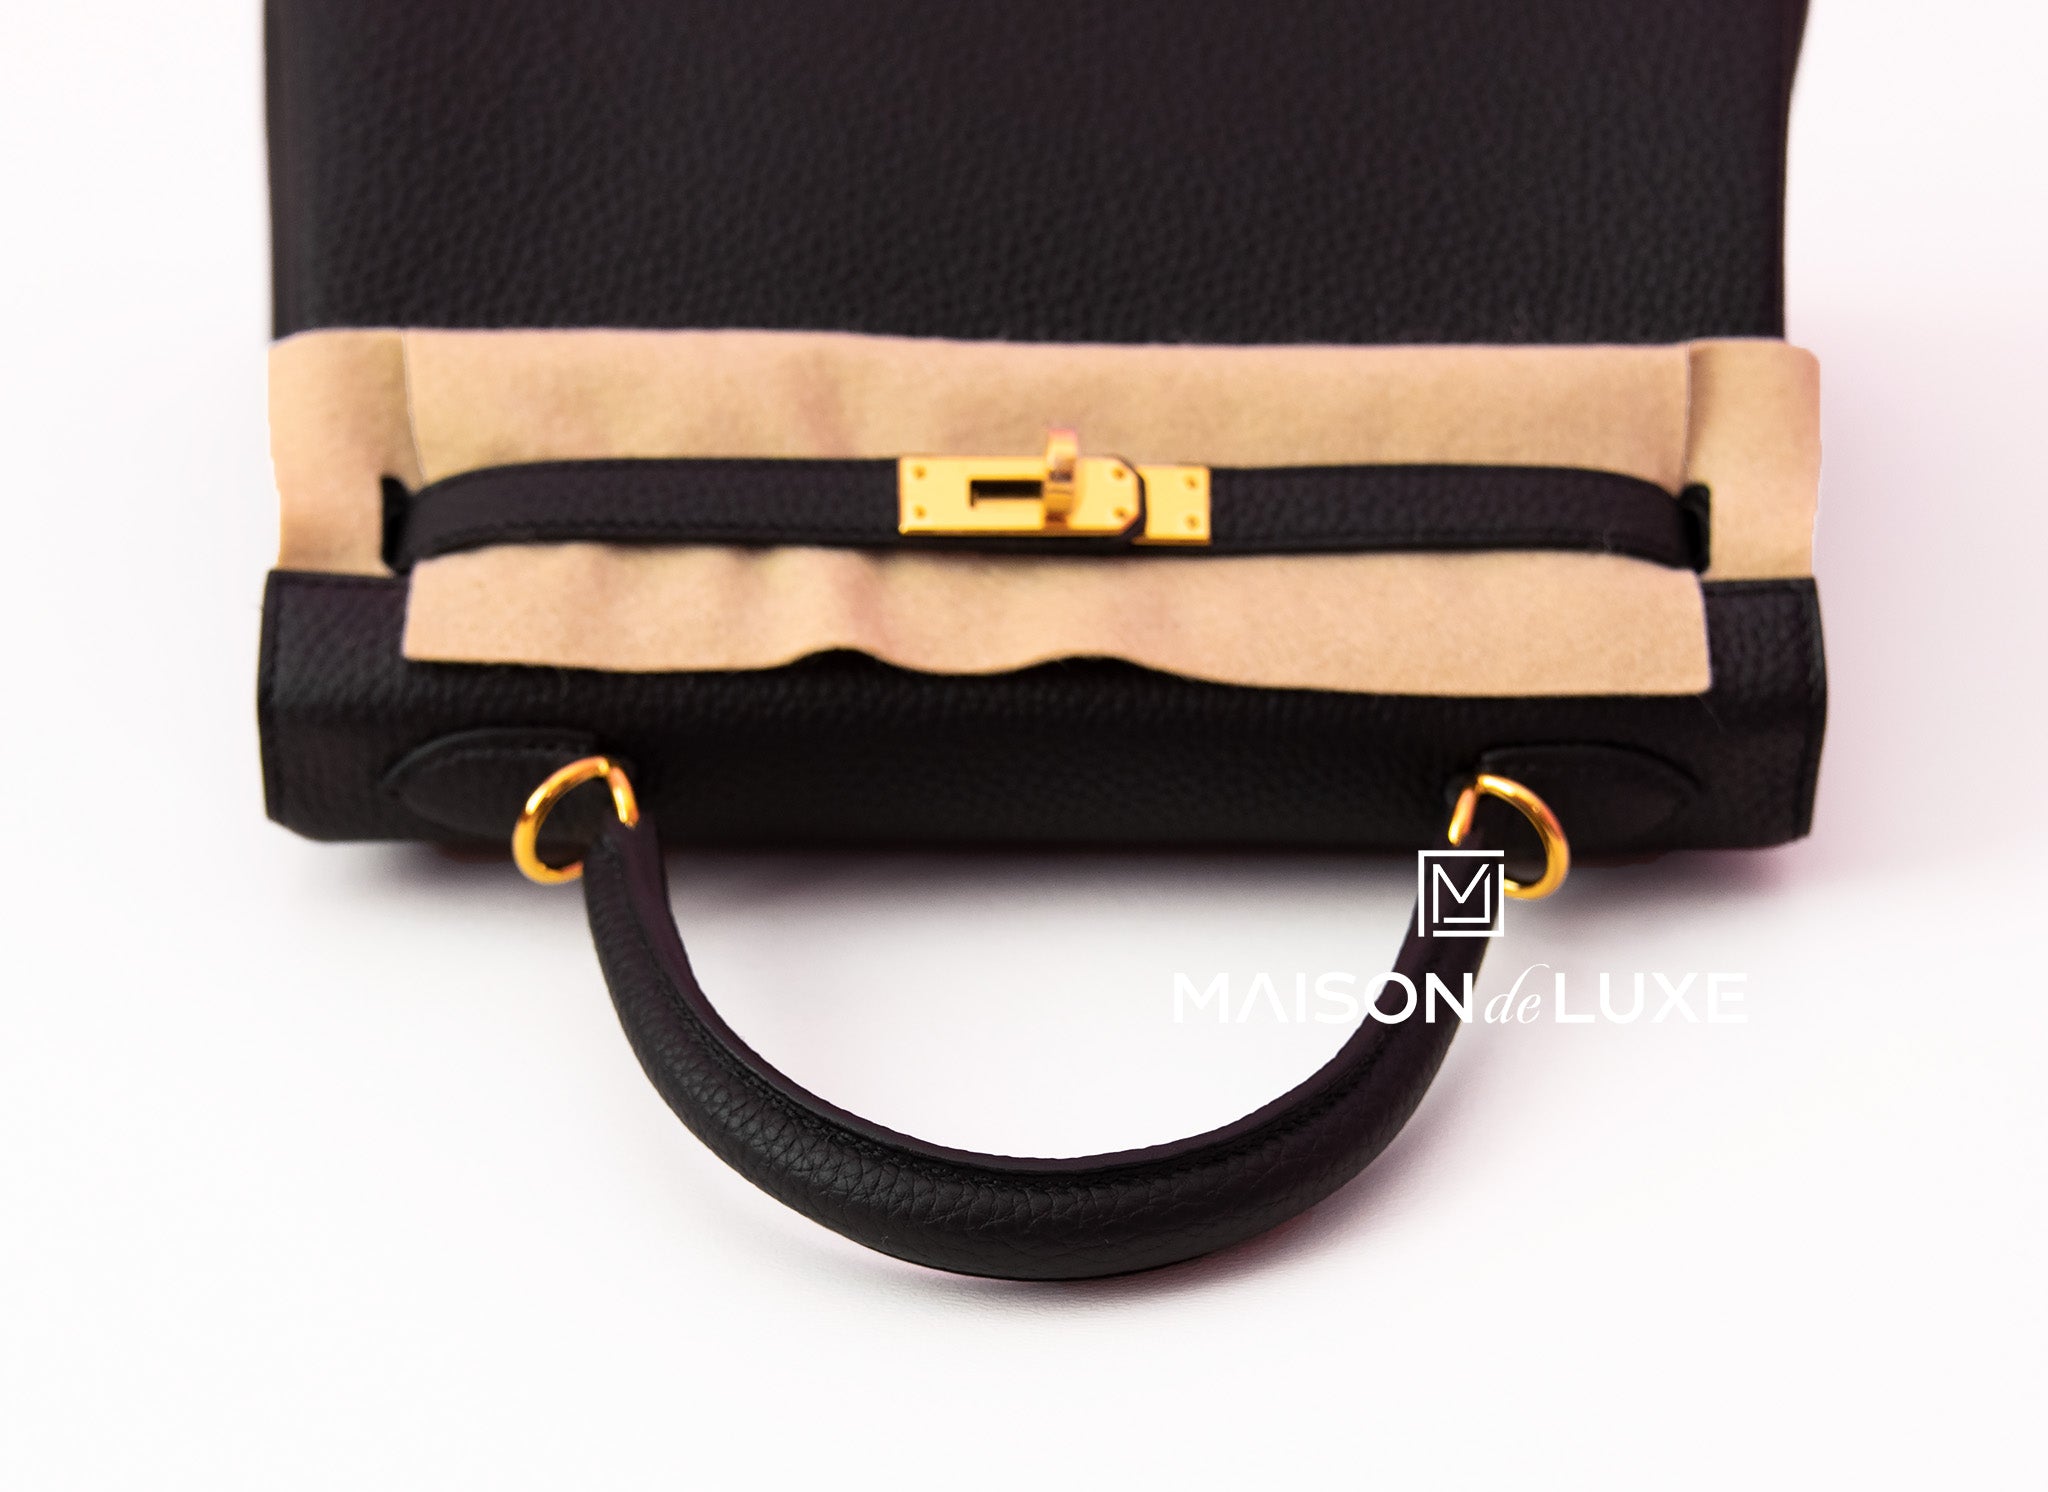 Hermès Kelly 25 Noir (Black) Togo Rose Gold Hardware RGHW — The